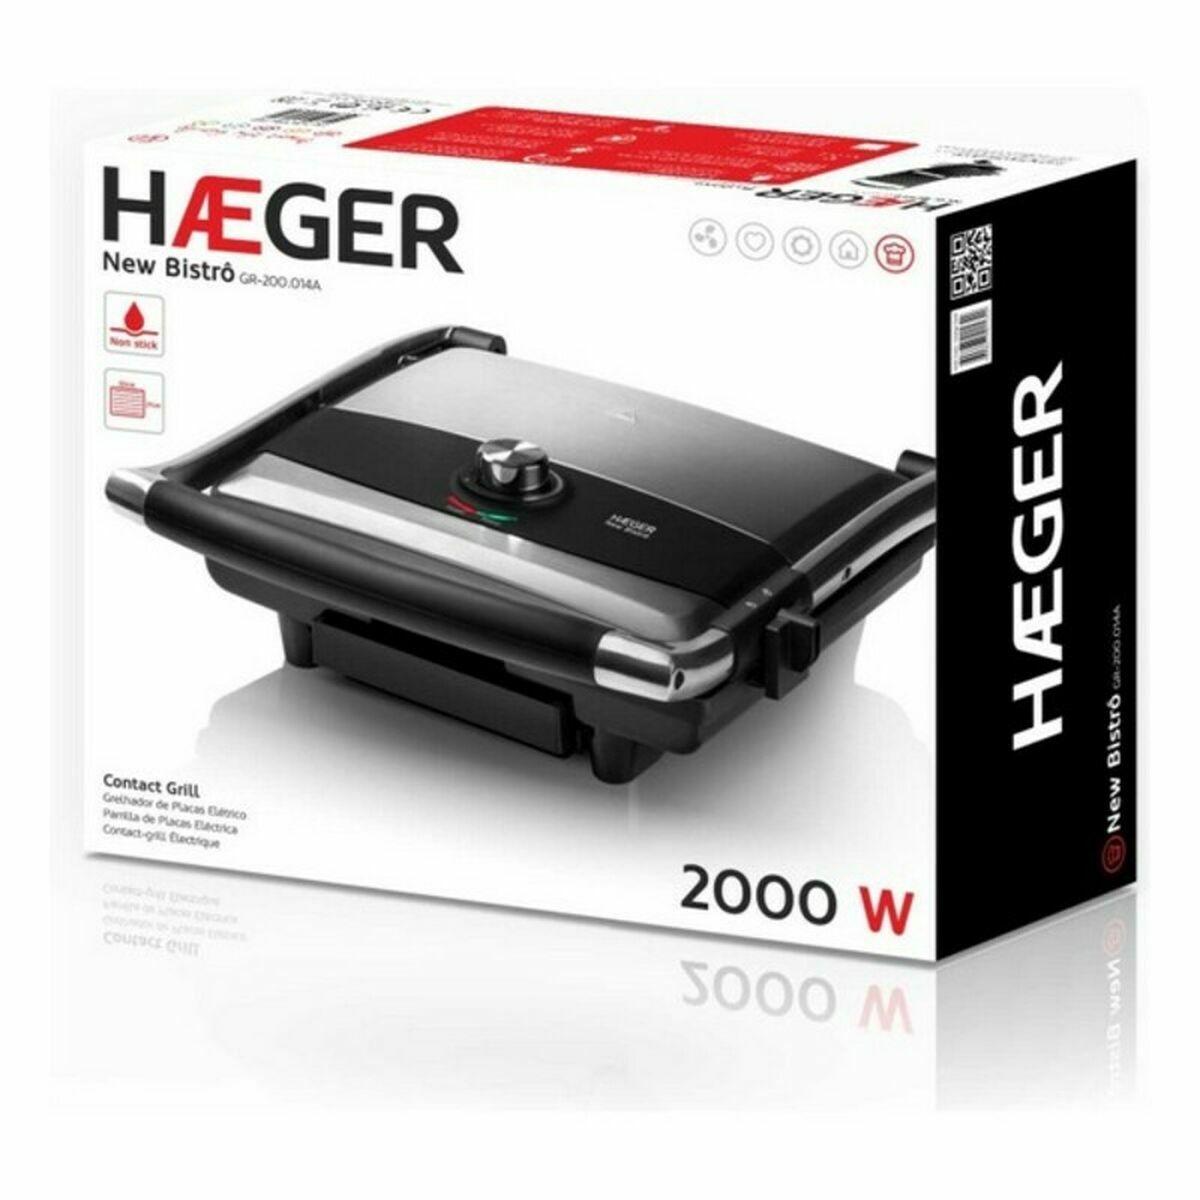 Parrilla Eléctrica Haeger GR-200.014A 2000 W